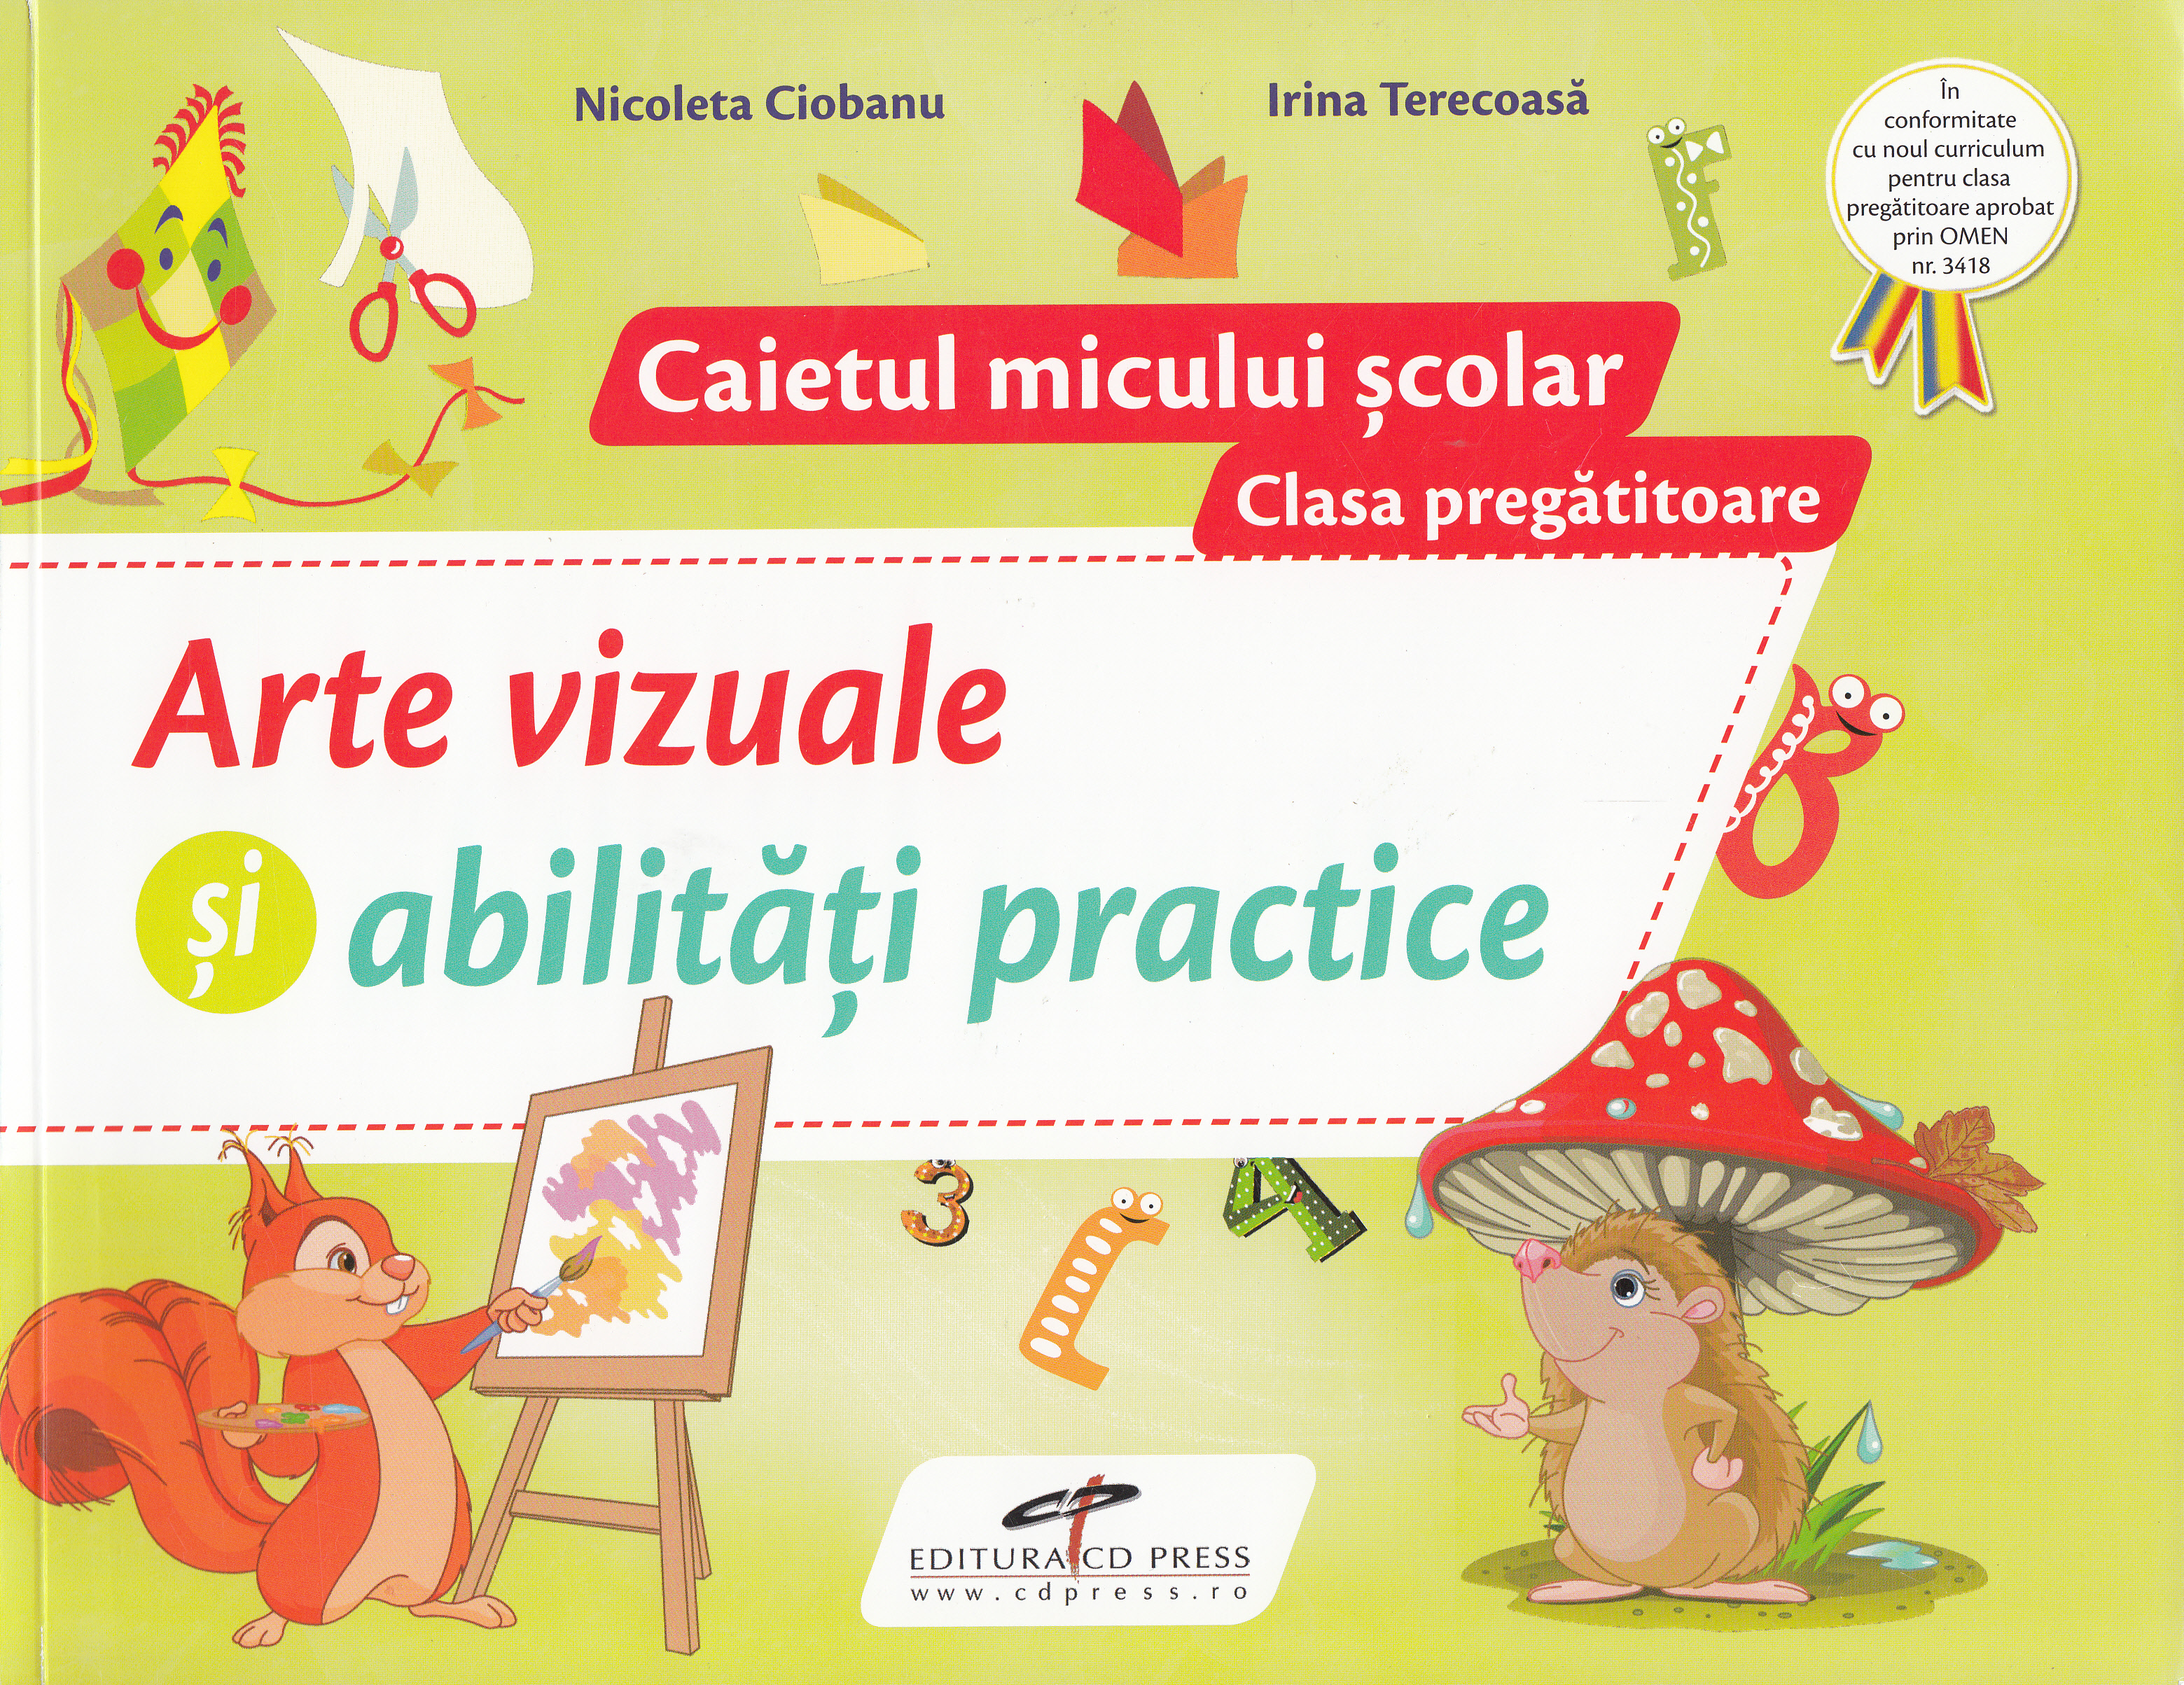 Arte vizuale si abilitati practice - Clasa pregatitoare - Caietul micului scolar - Nicoleta Ciobanu, Irina Terecoasa